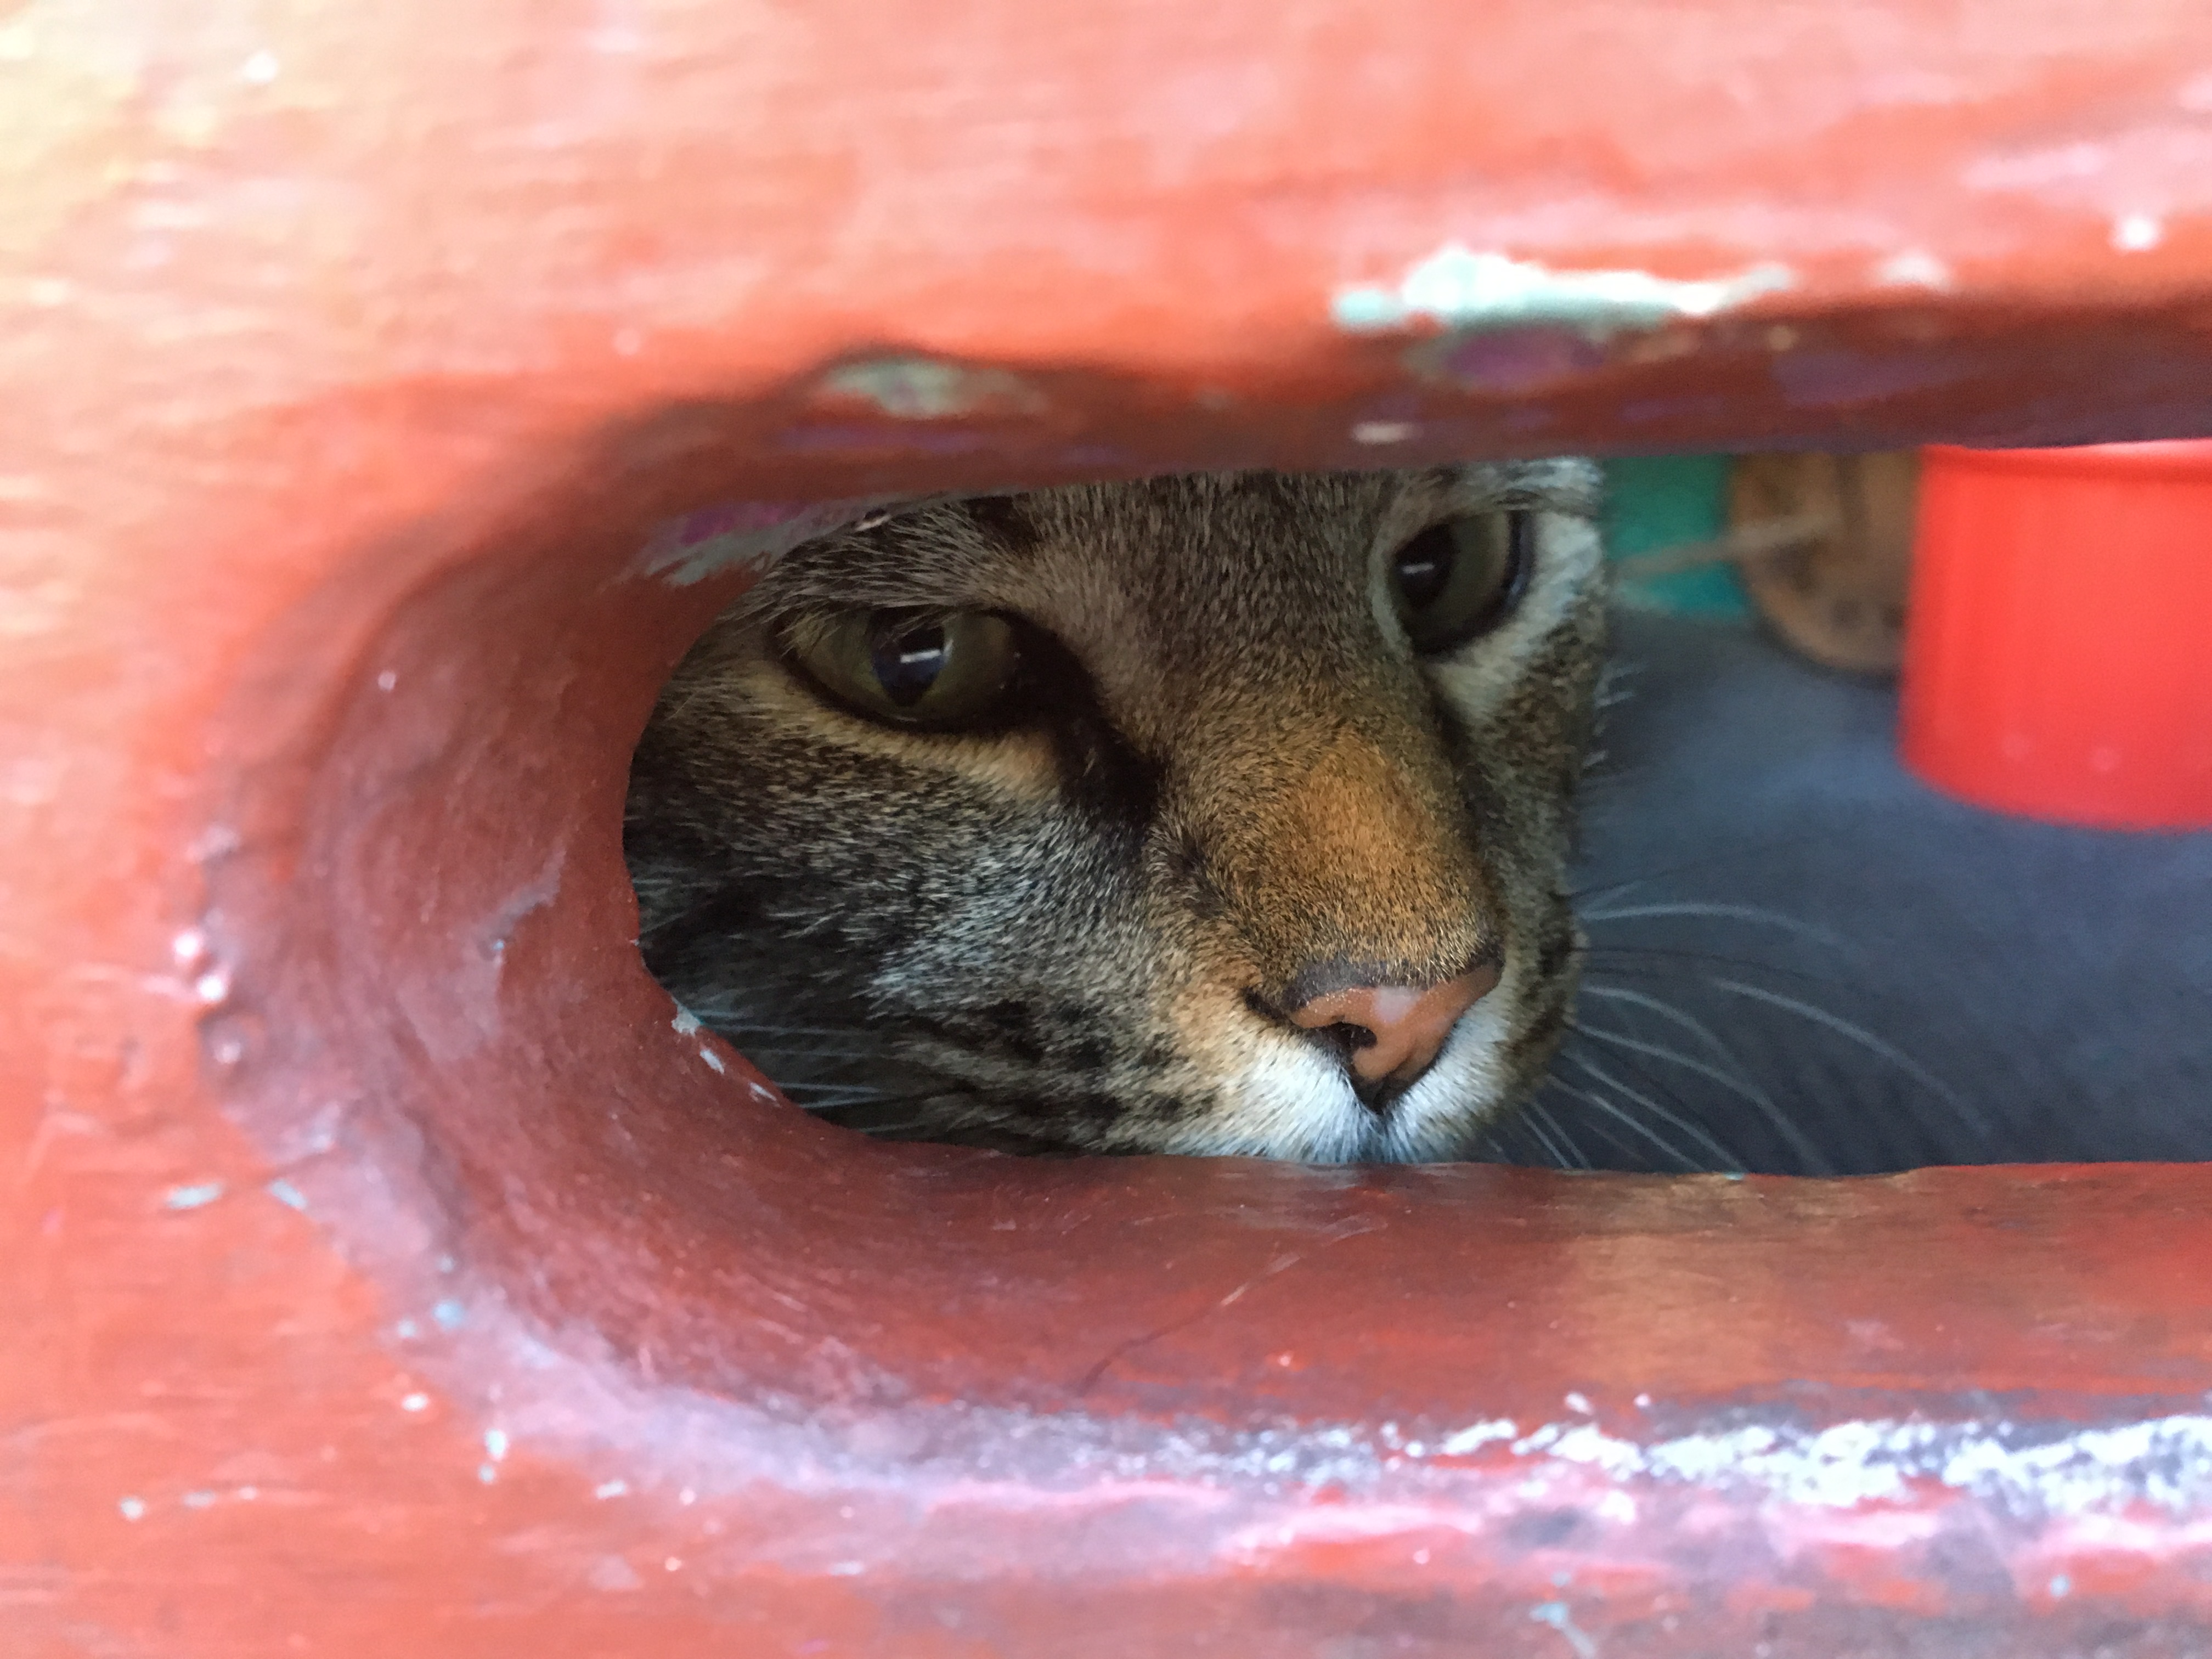 Cat Peering Through Mail Slot Of Door